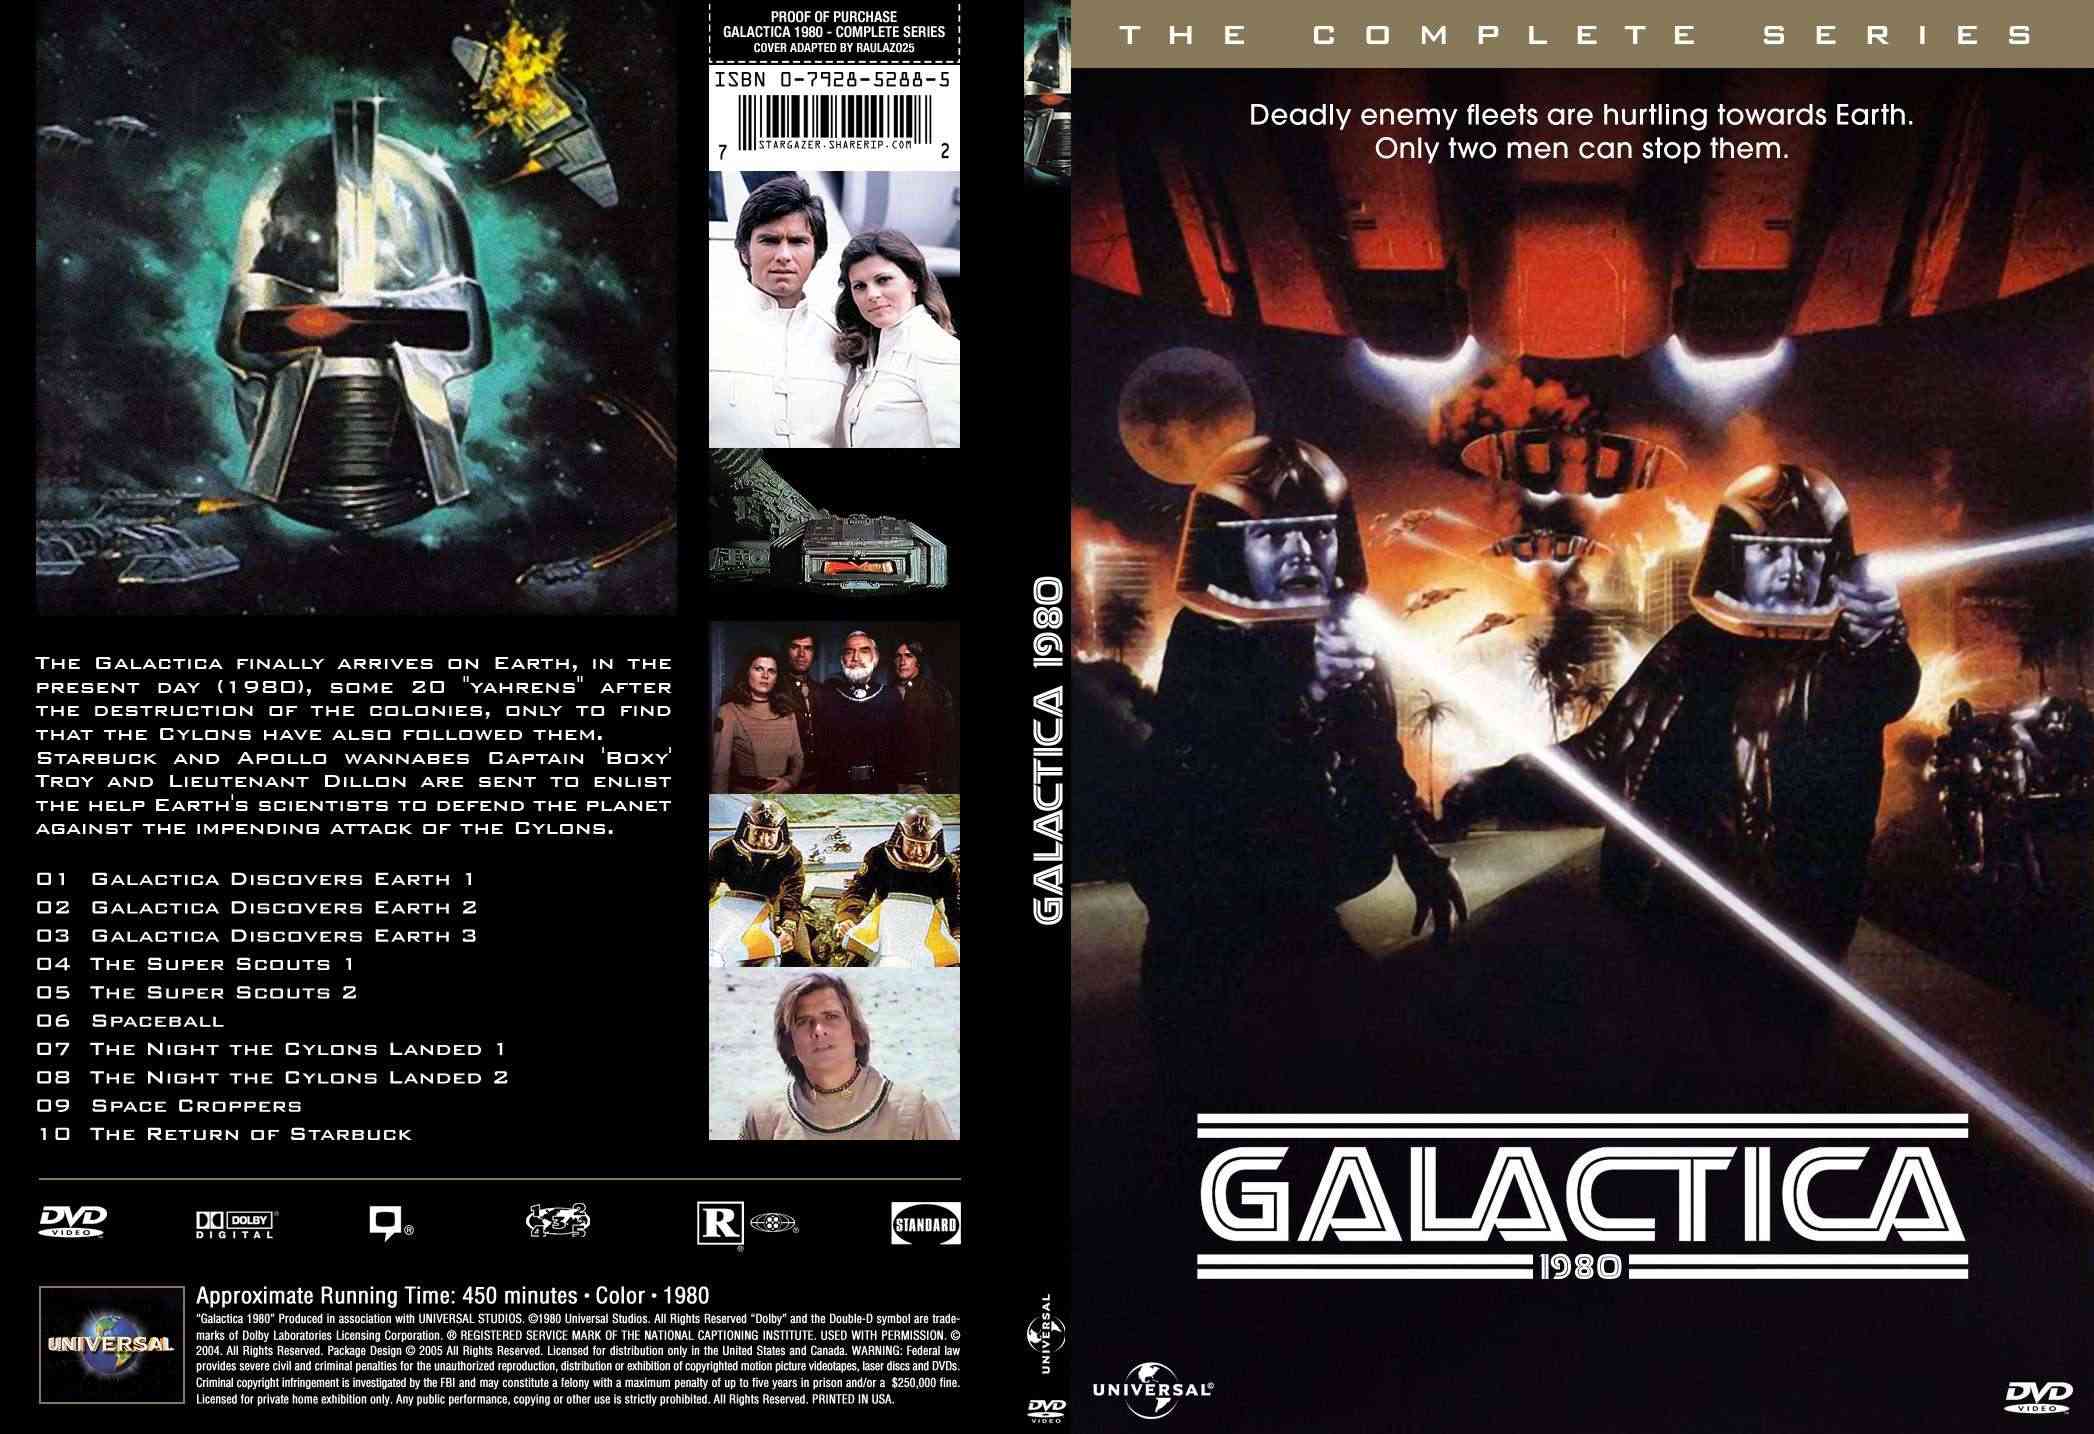 جديد وحصريا والنسخة النادرة الثانية من مسلسل الخيال والفضاء الرائع Galactica 1980  كامل وبنسخ DVD RIB وعلي سيرفر اسرع من الميديا فاير Galact10